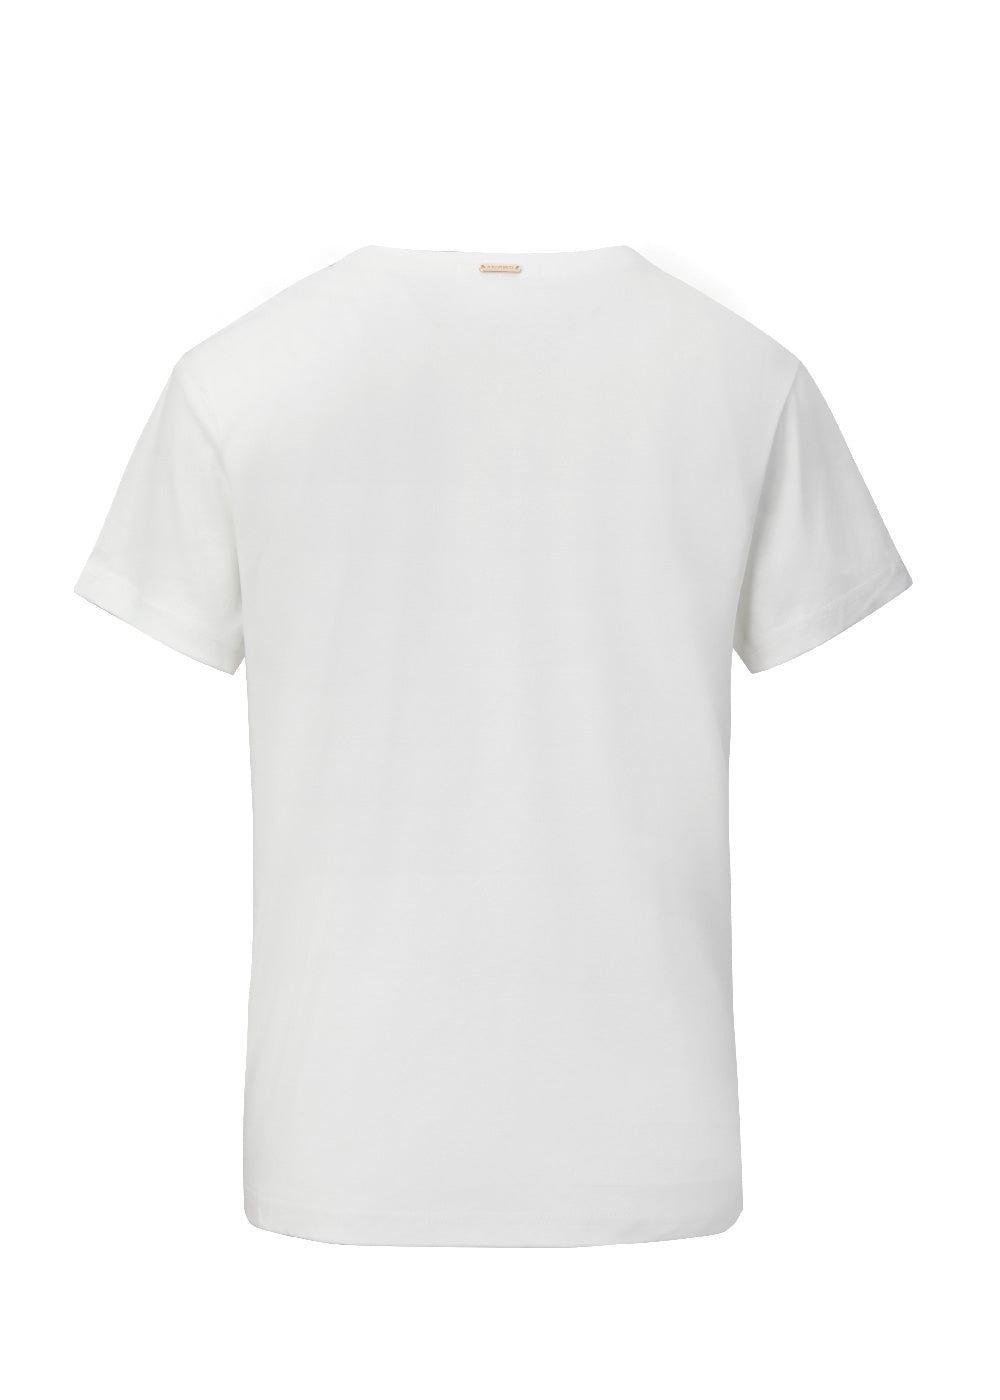 Dean T Shirt in Logo Snow